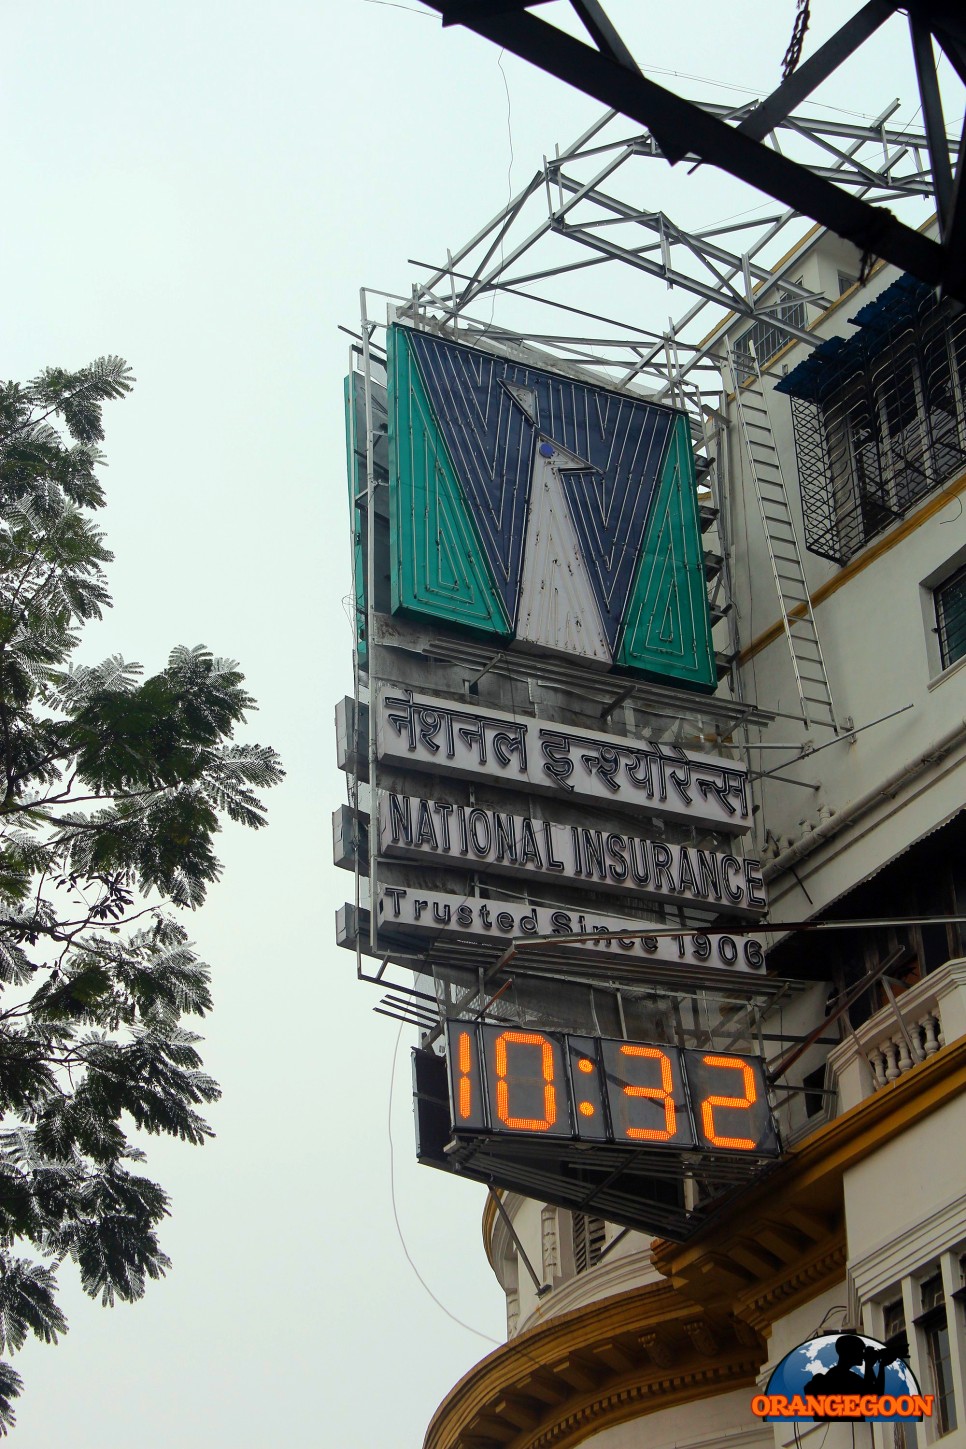 (인도 콜카타 / 파크 스트리트) 여기가 콜카타의 강남이라면서요? 콜카타를 대표하는 번화가에서 뚜벅뚜벅 Park Street, Kolkata